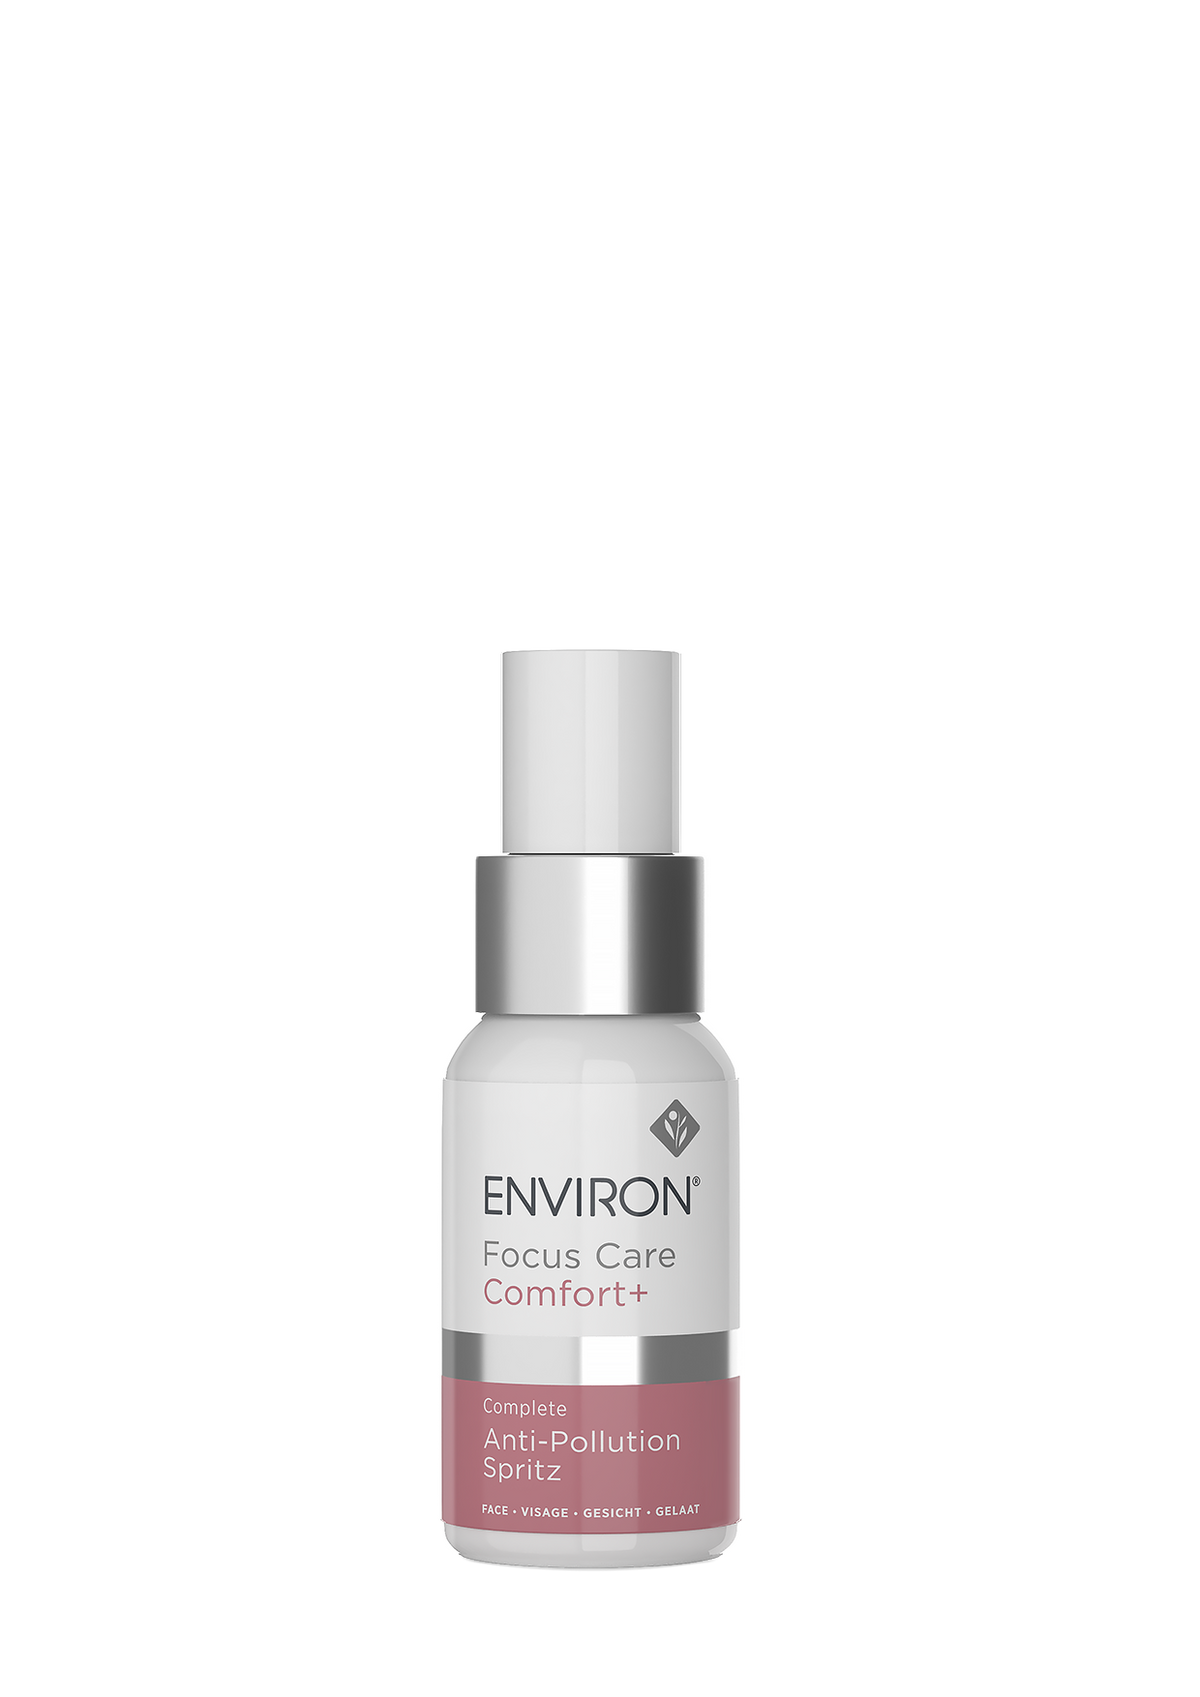 Environ Focus Care Comfort + Complete Anti-Pollution Spritz